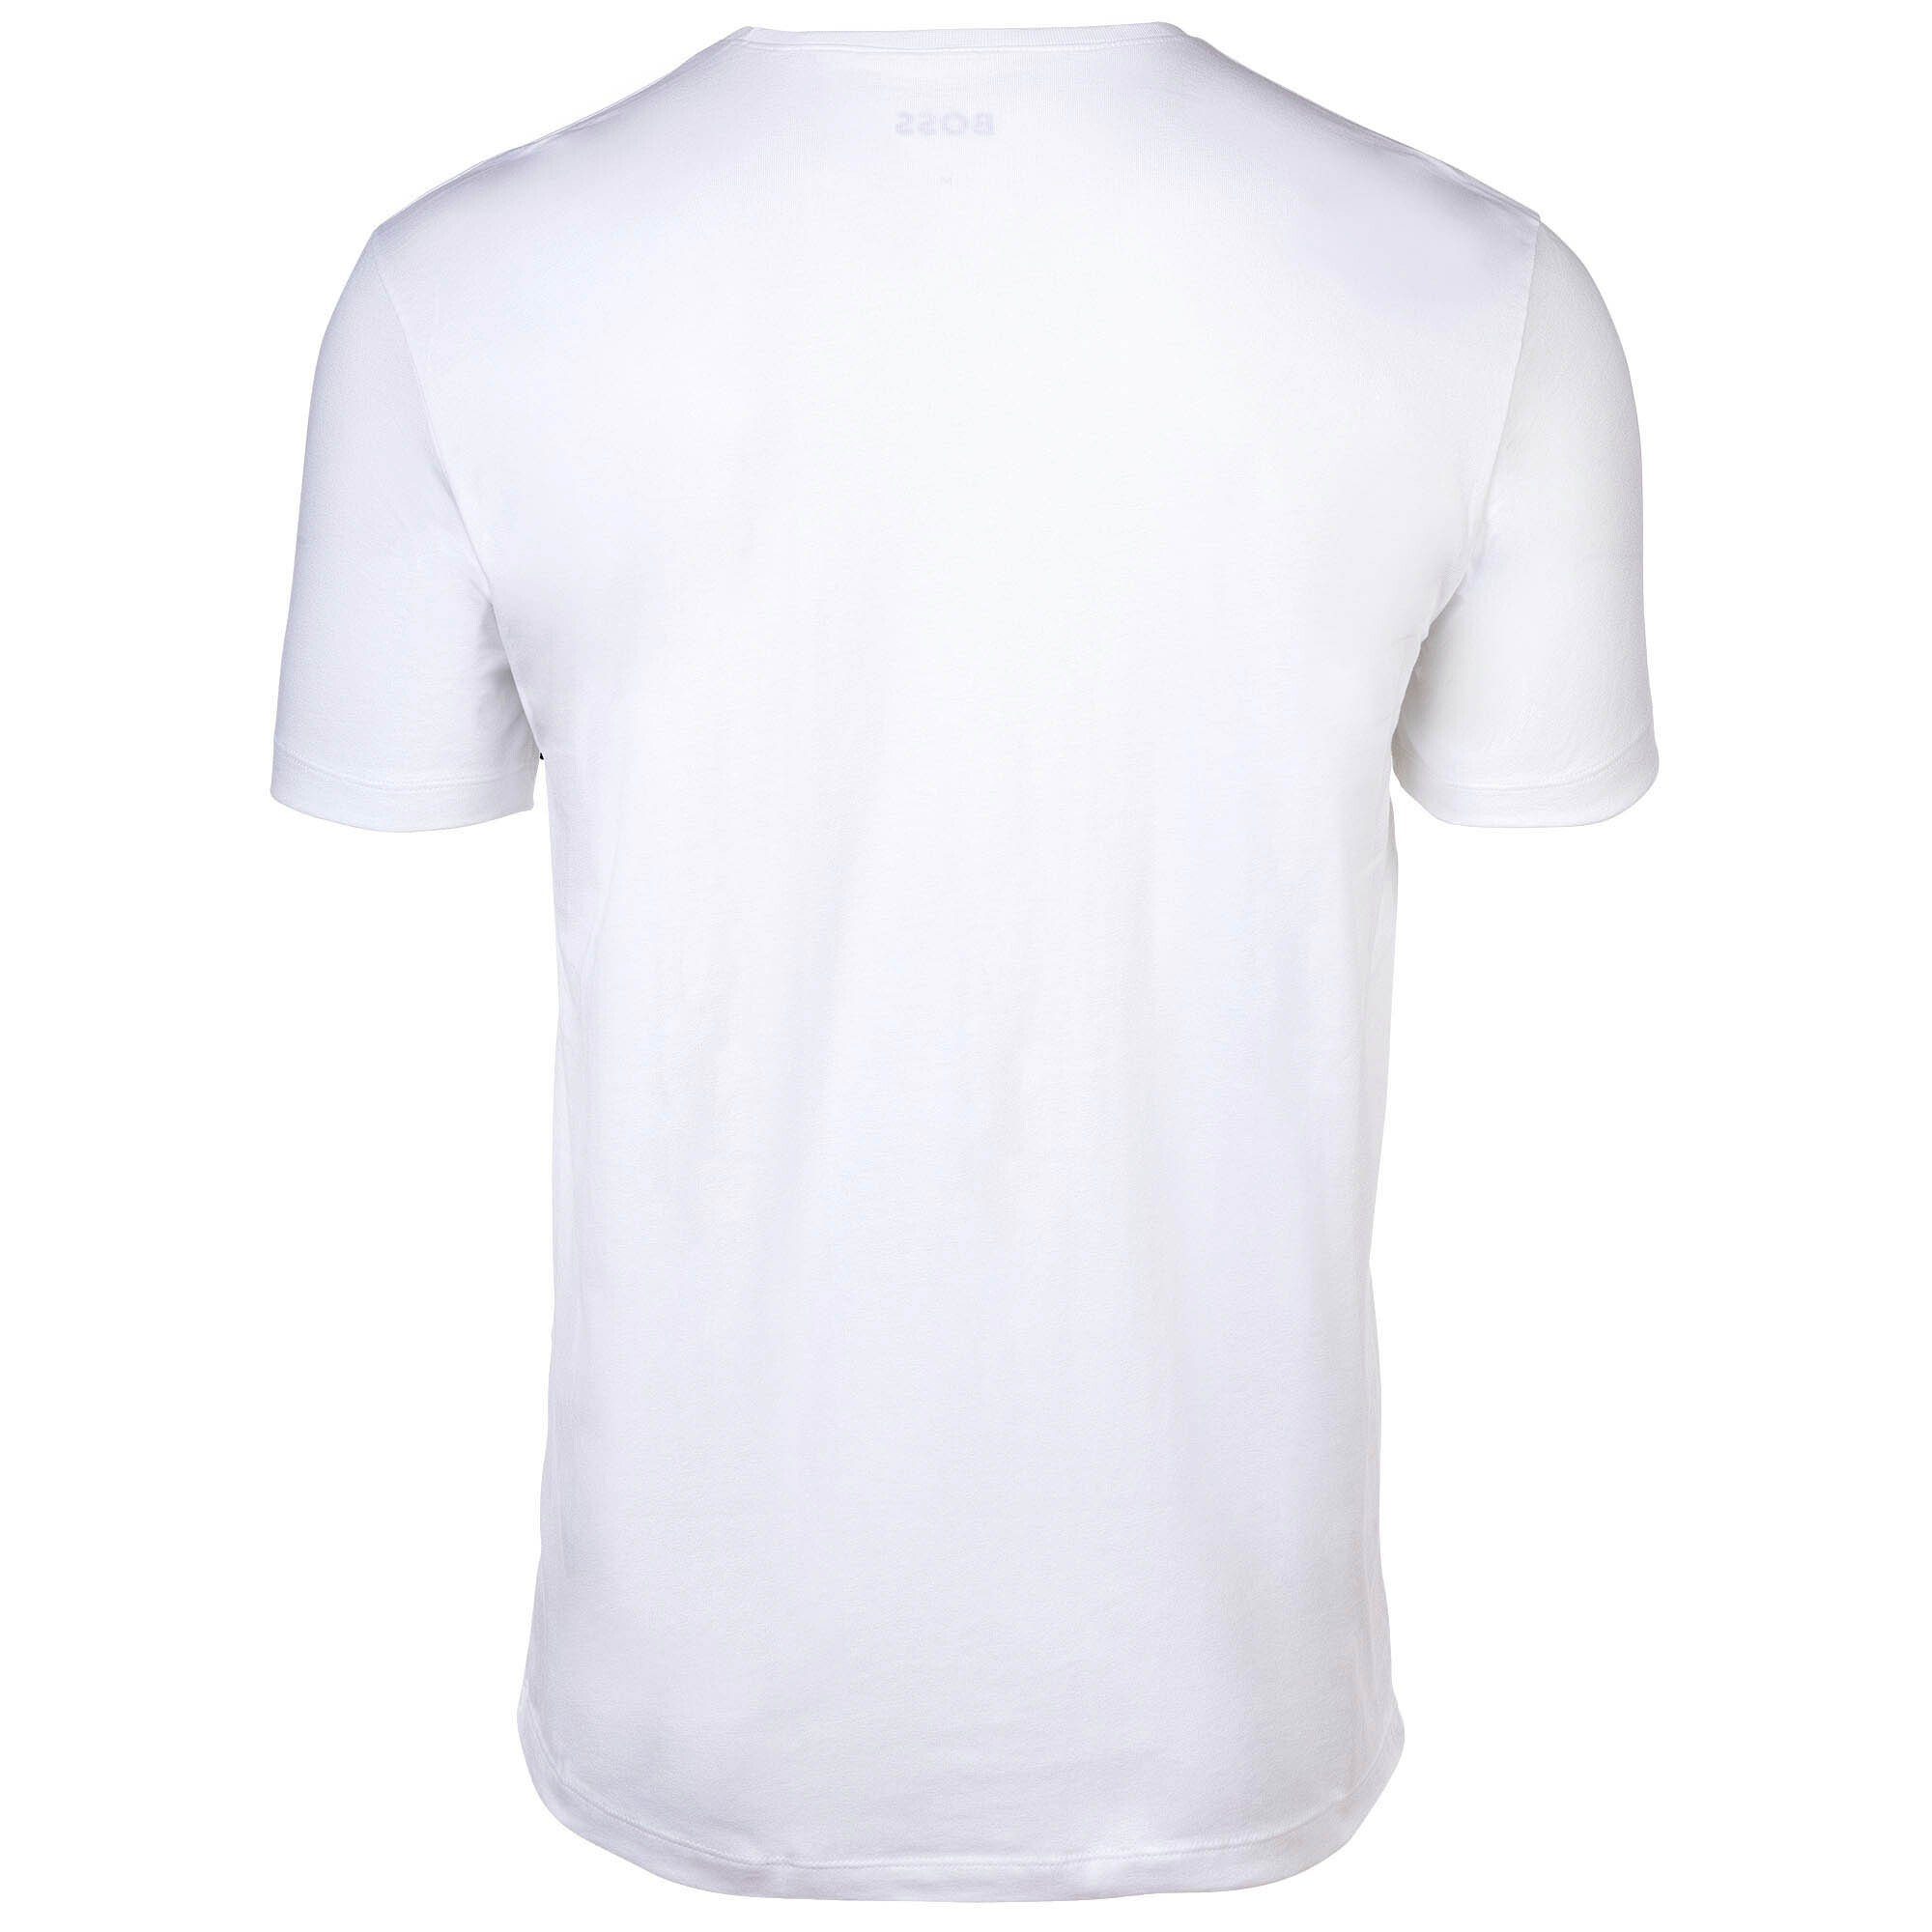 Pack Weiß - 4er T-Shirt BOSS Herren TShirtRN Comfort T-Shirt,